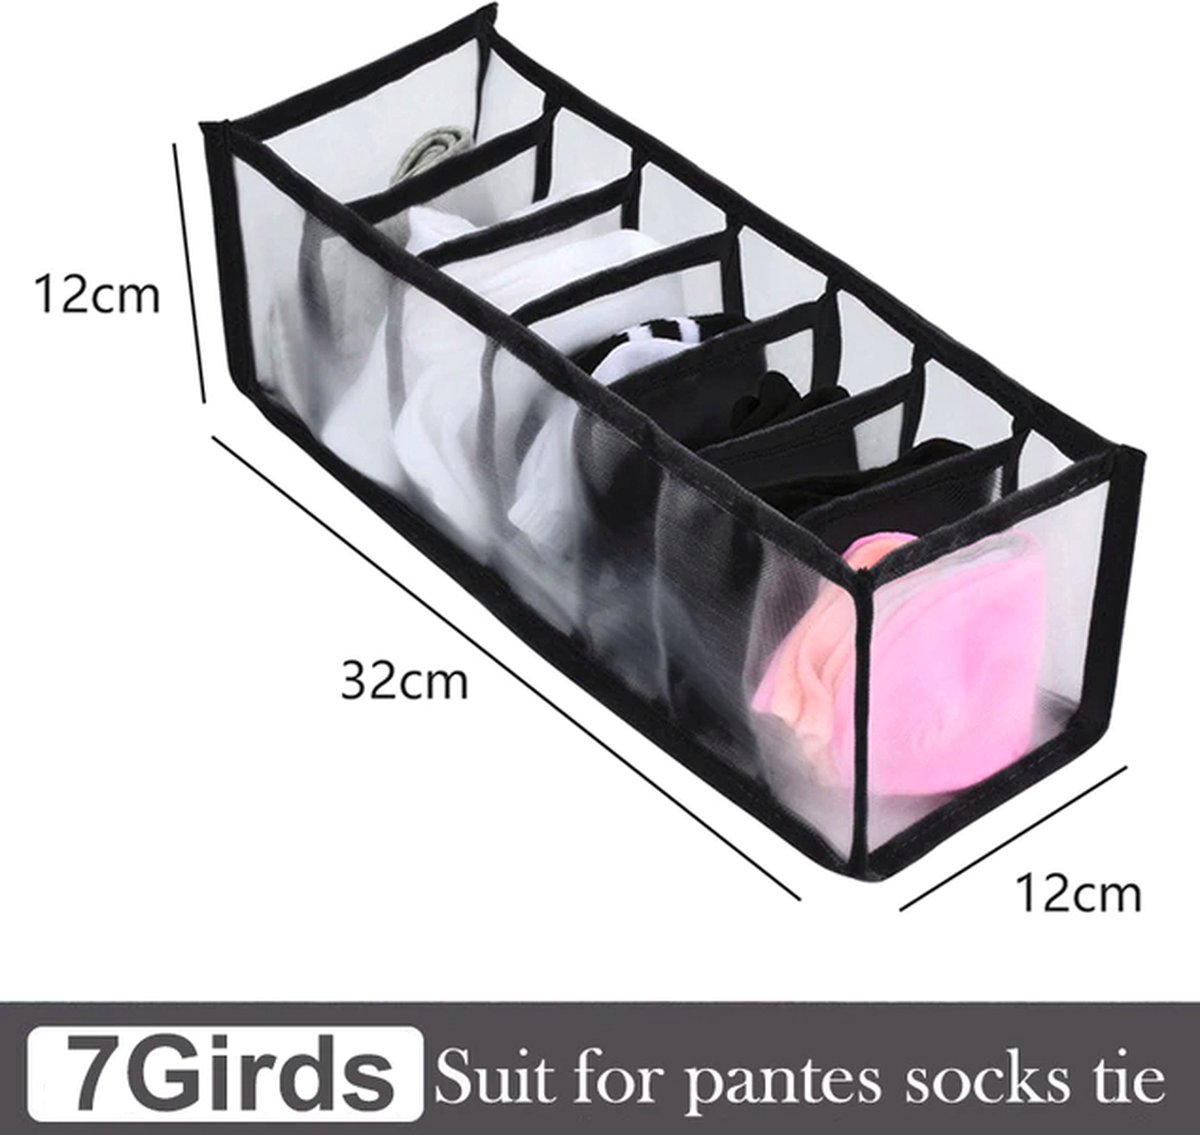 Kleding sokken en ondergoed organizer - Kledingkast kledinglade organizer - Voor ondergoed/sokken